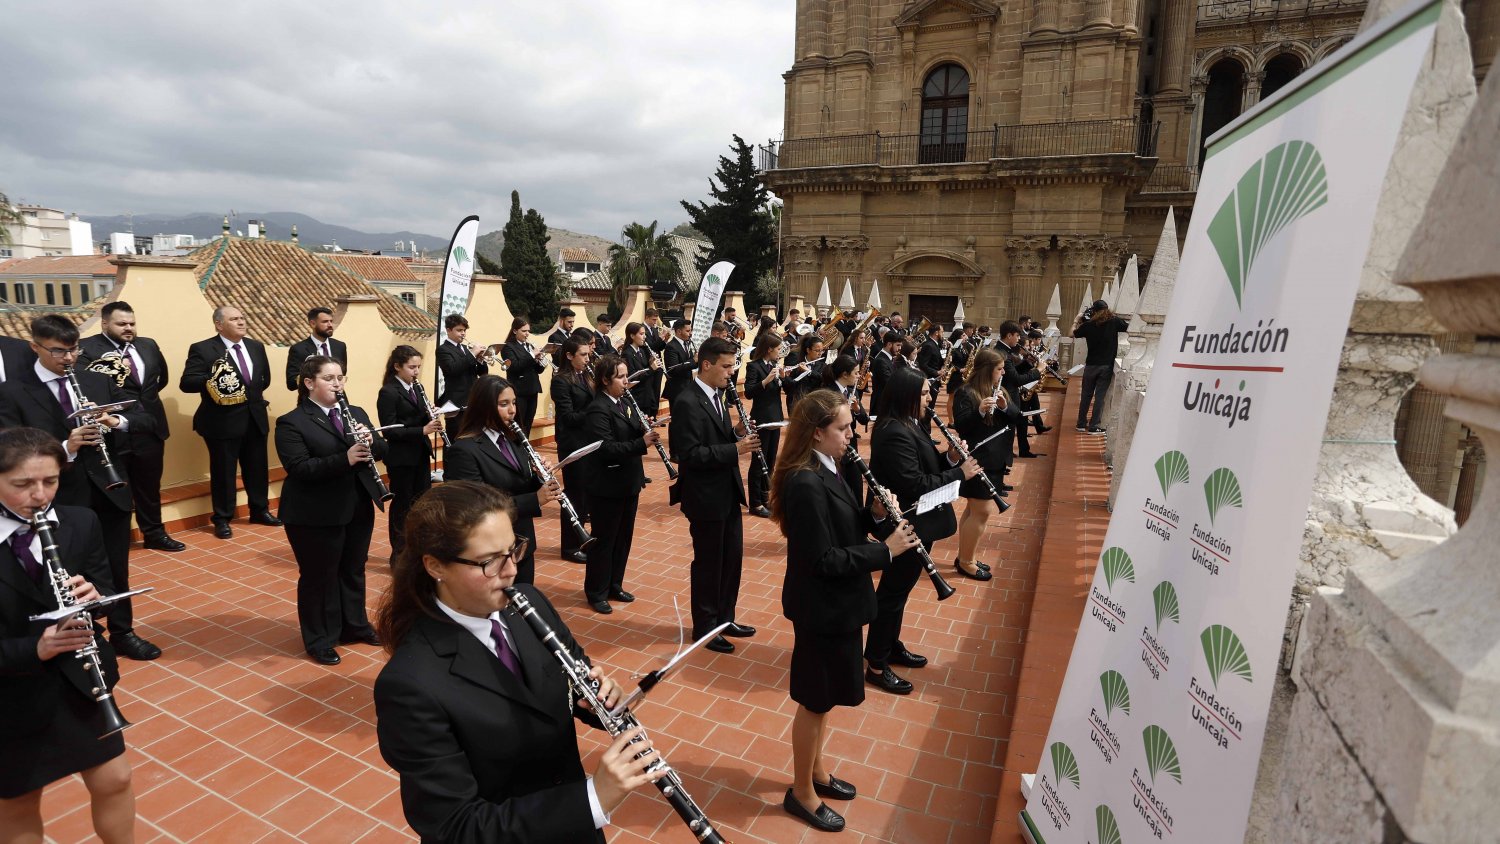 El Centro Cultural Fundación Unicaja de Málaga ofrece conciertos desde su azotea en Semana Santa